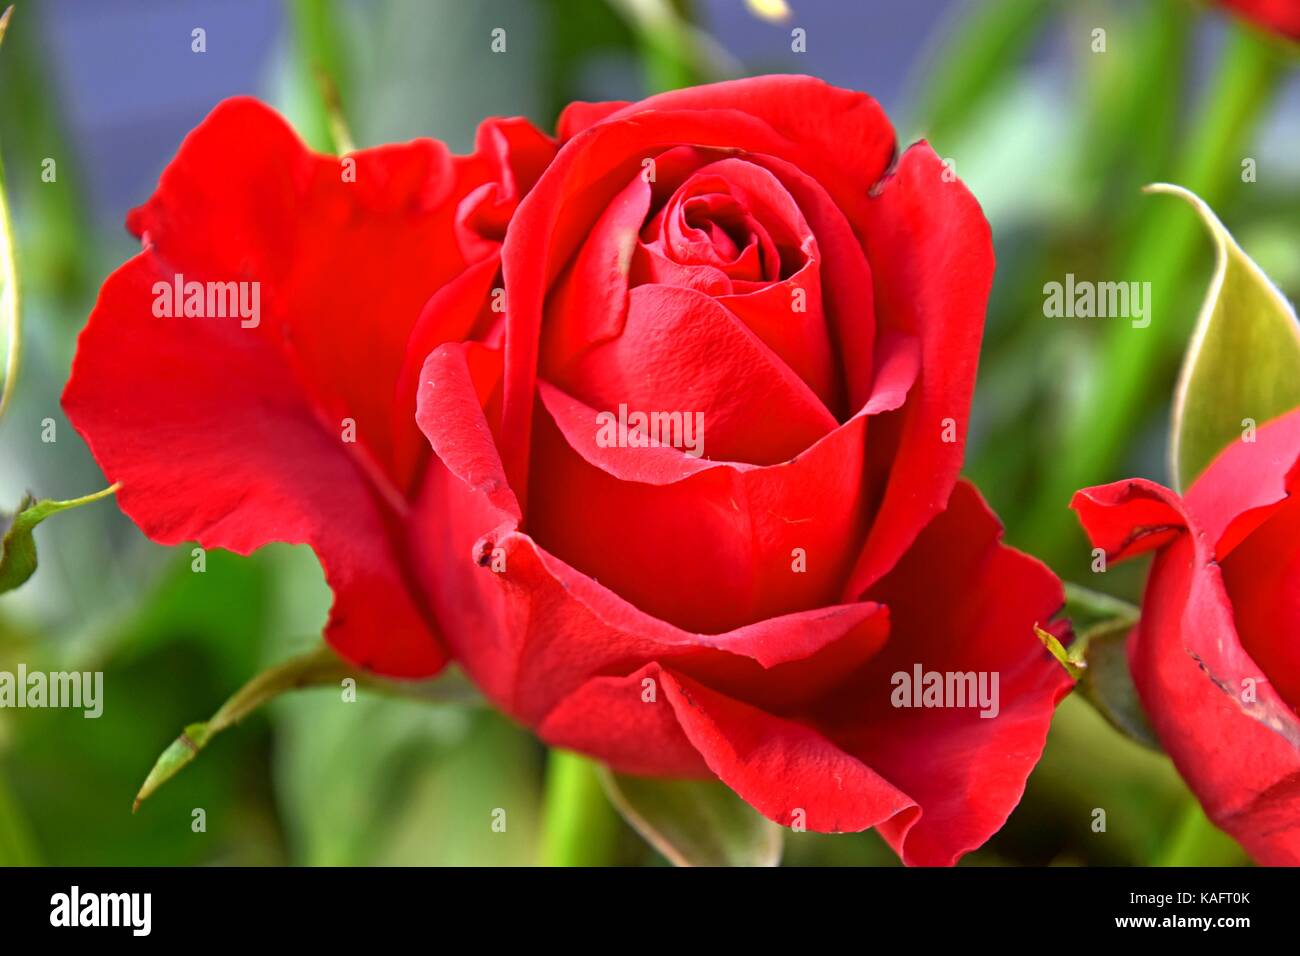 Rosen sind rot, perfekte rote Rosen, Symbol der Liebe, Feste, Tag der  aniversary Stockfotografie - Alamy